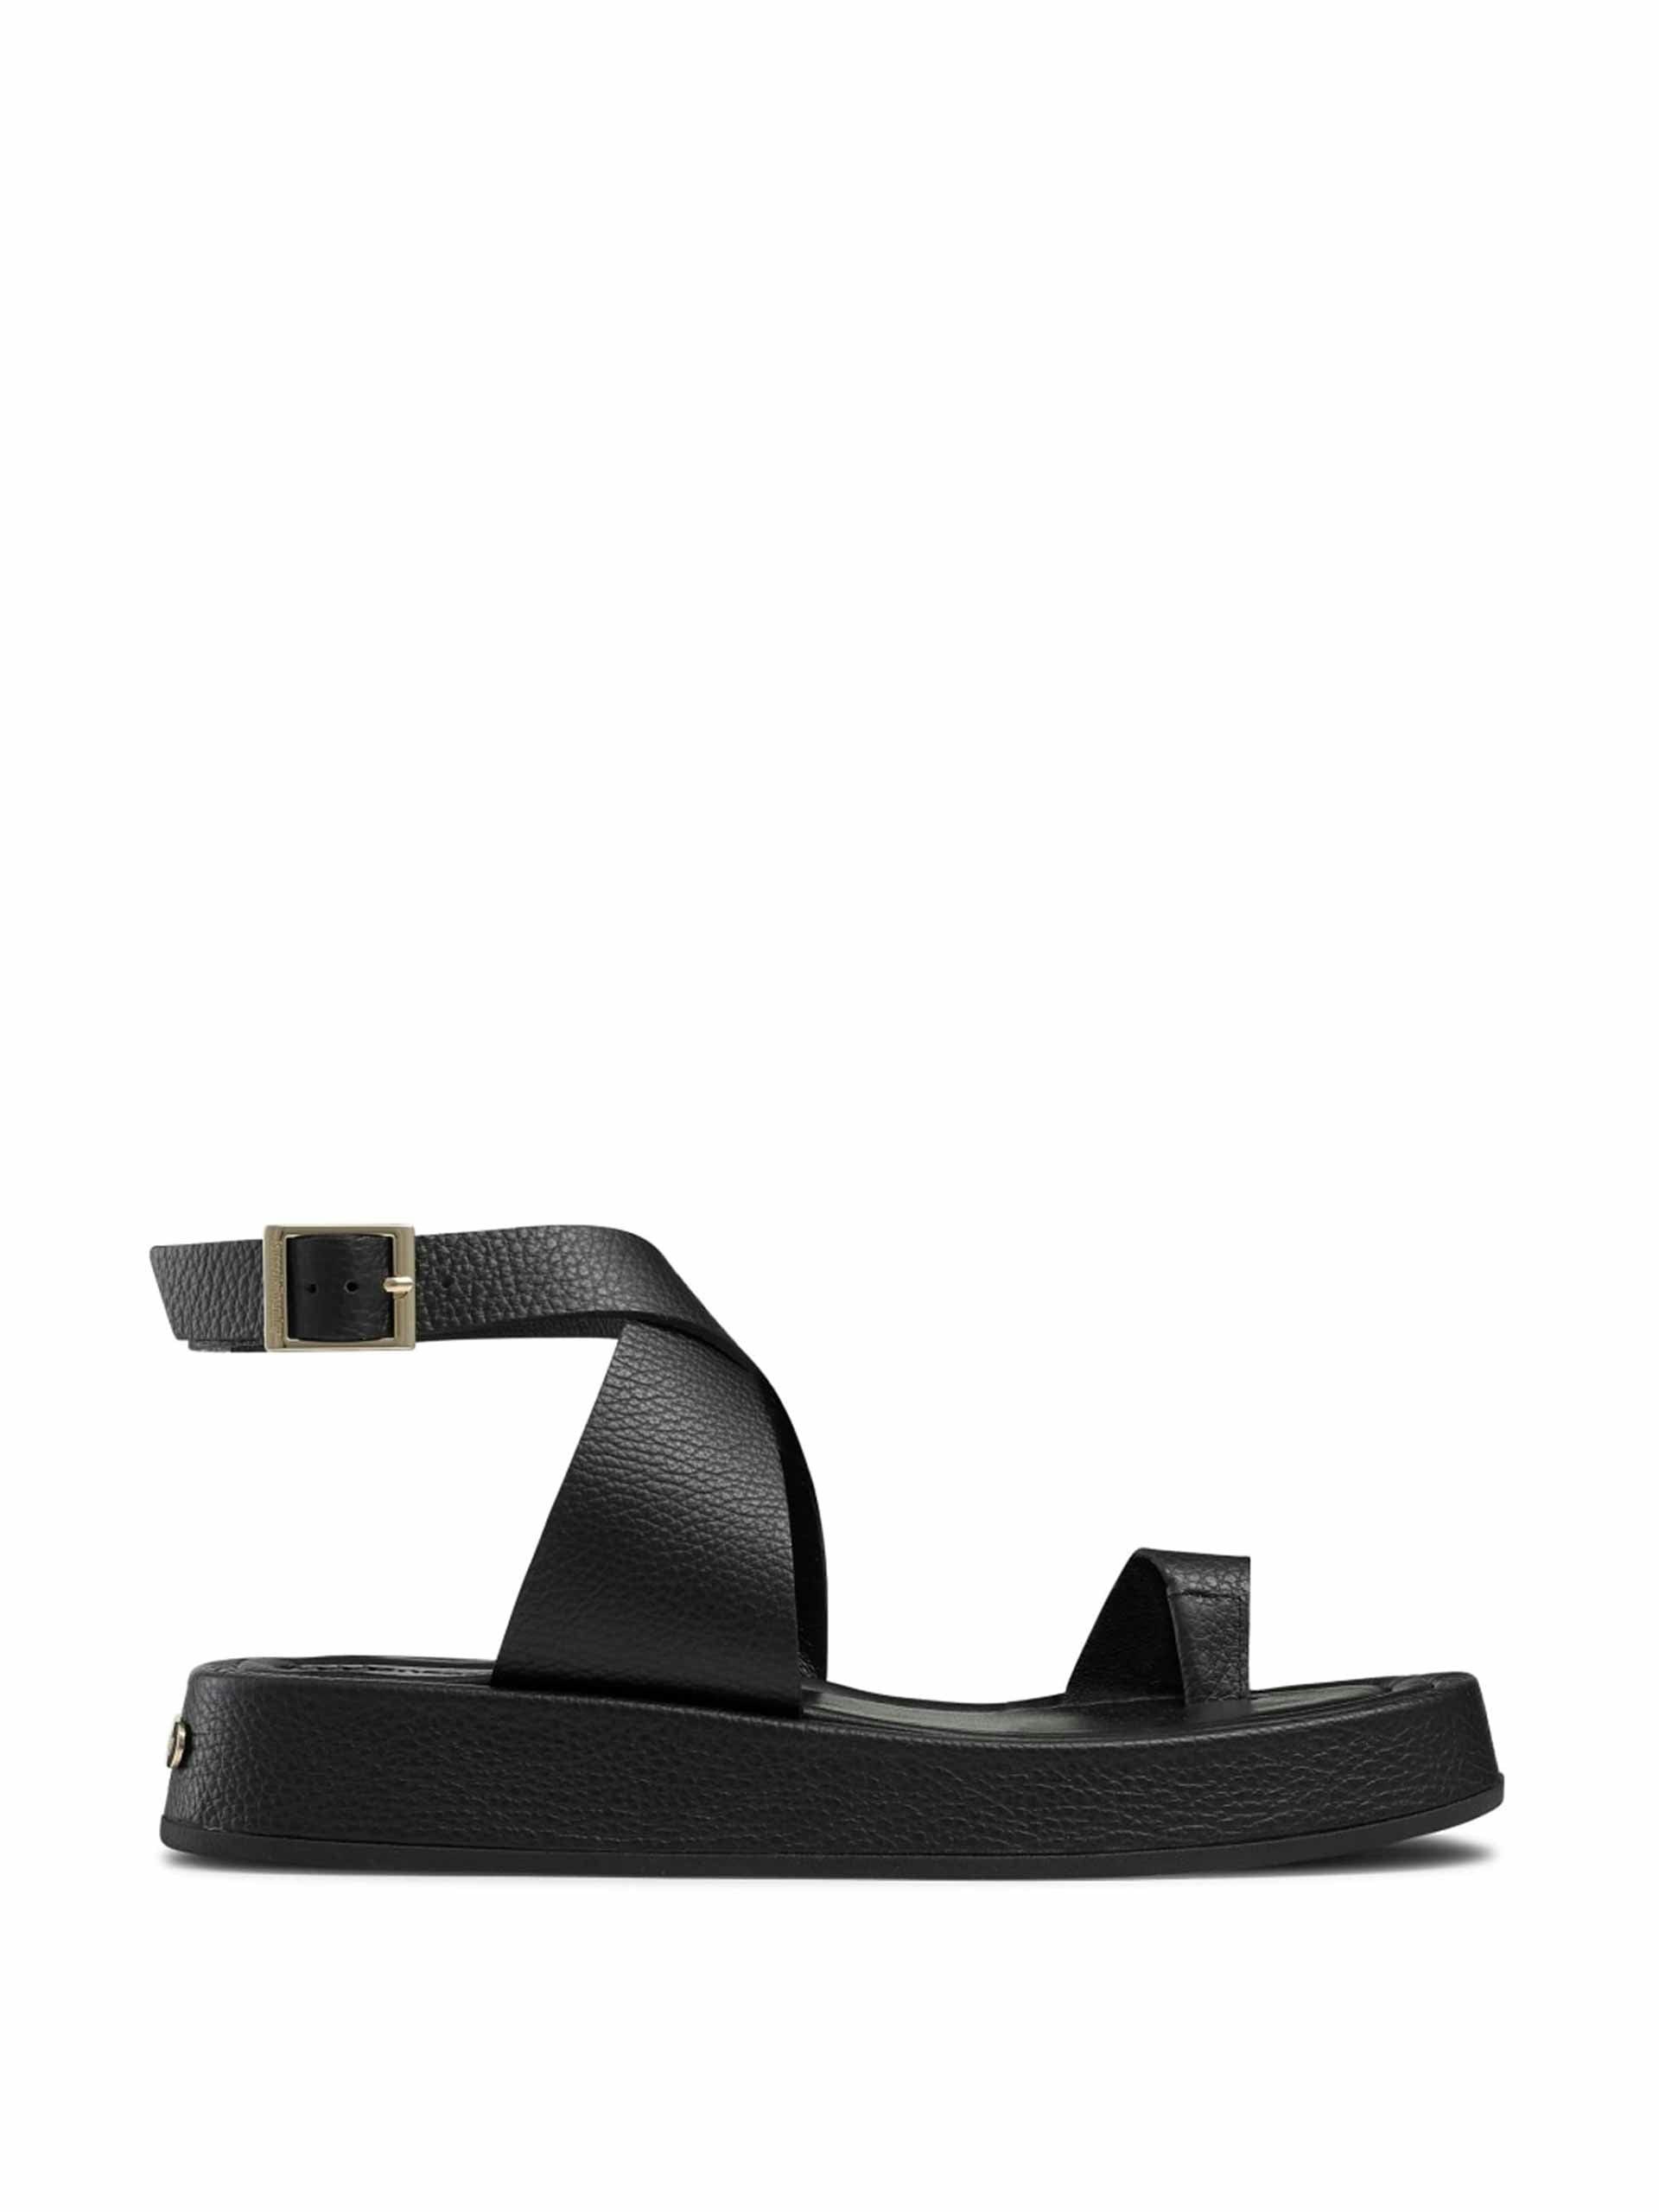 Black flatform sandal